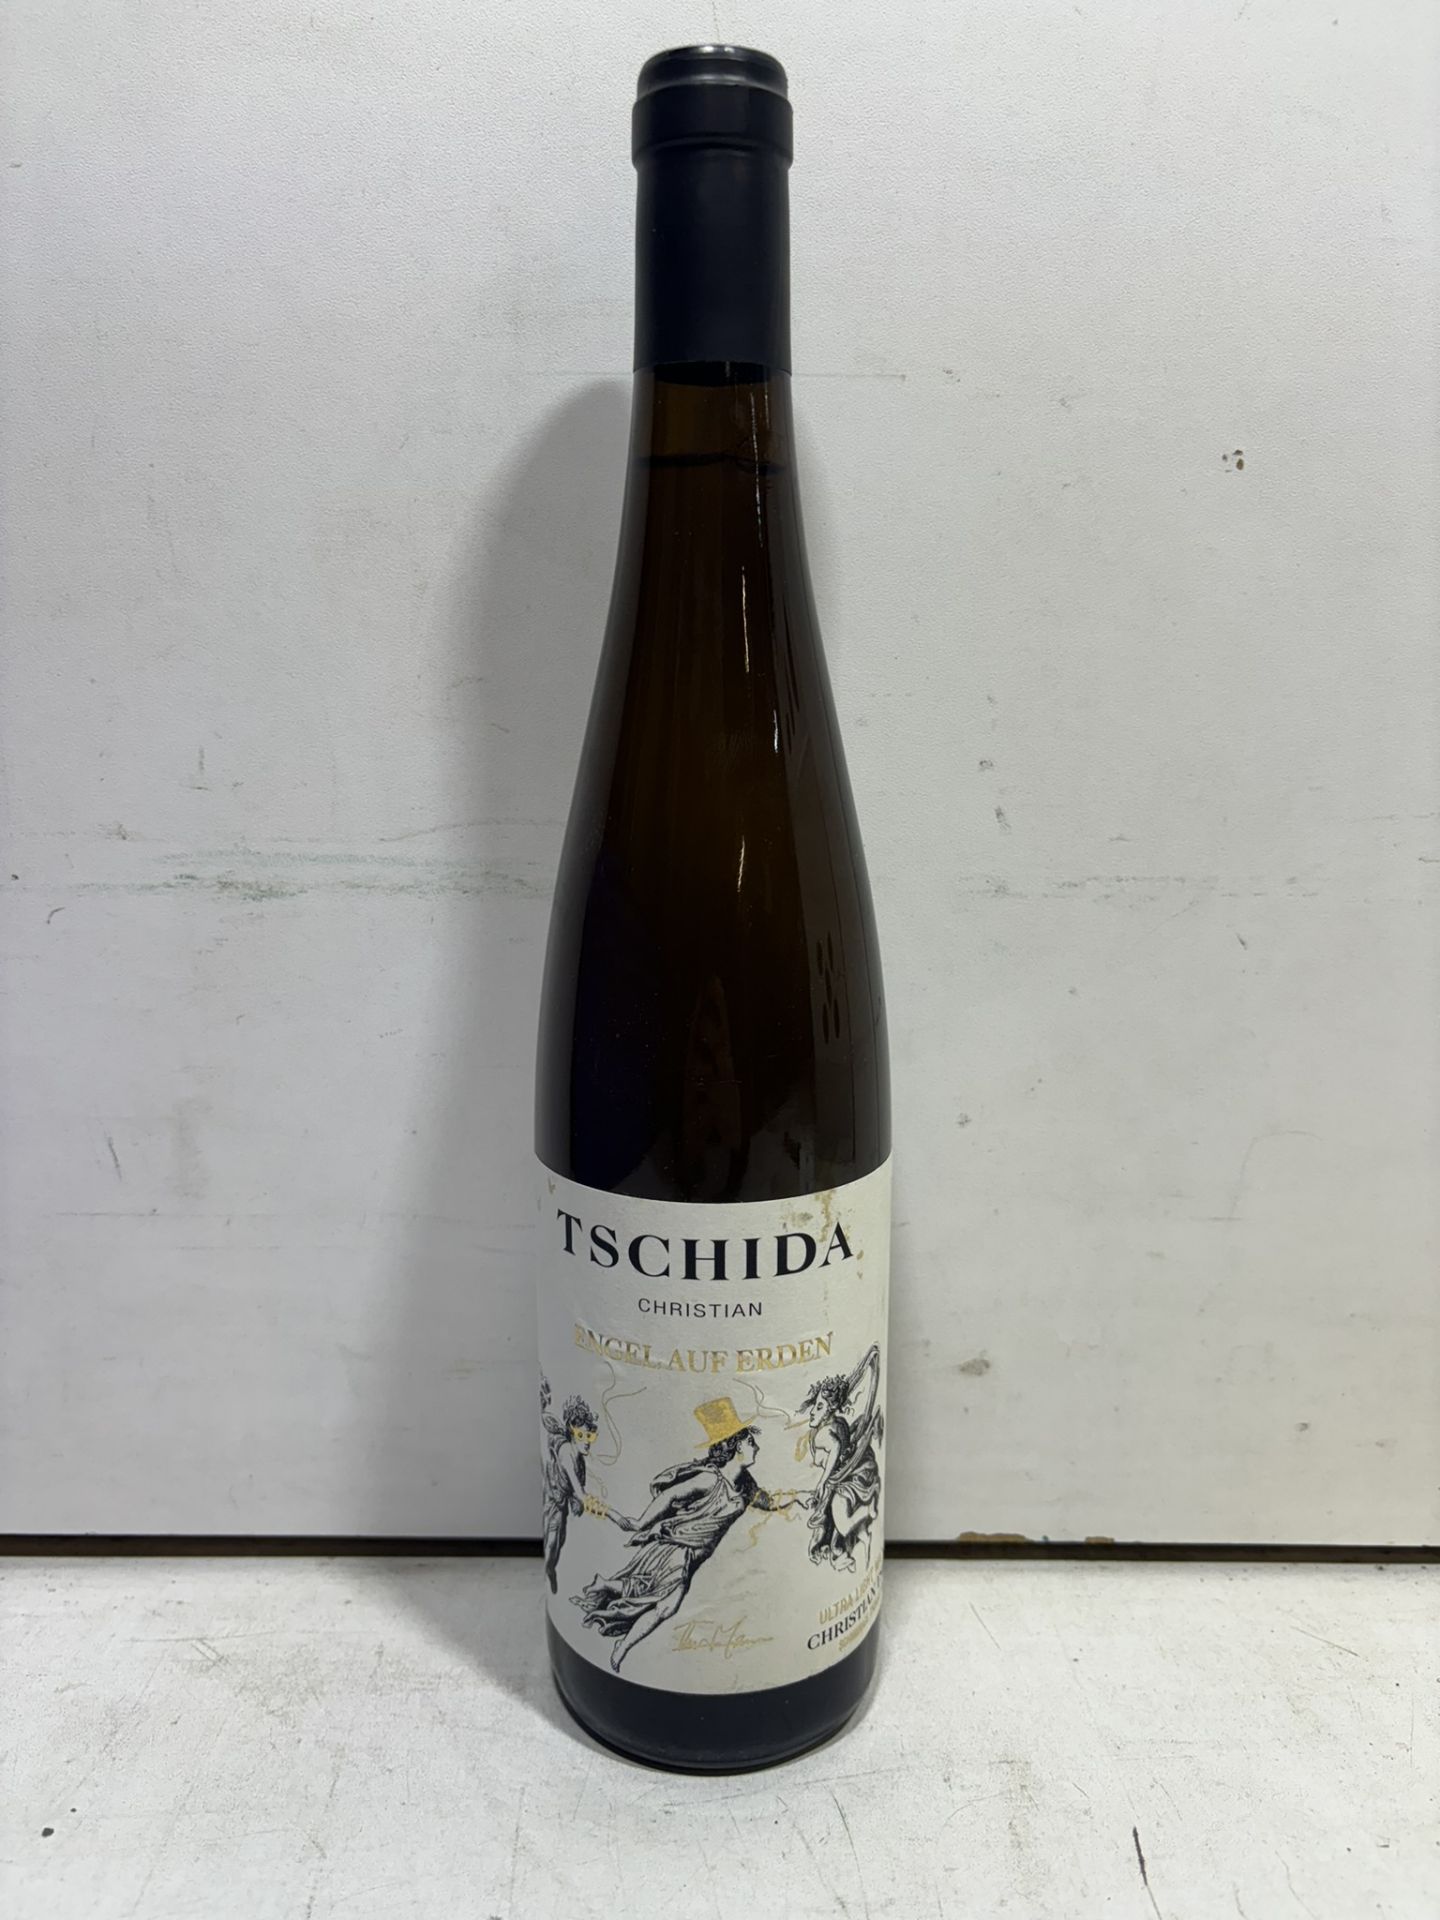 8 X Bottles Of Engel Auf Erden, Christian Tschida 2020 White Wine 75Cl